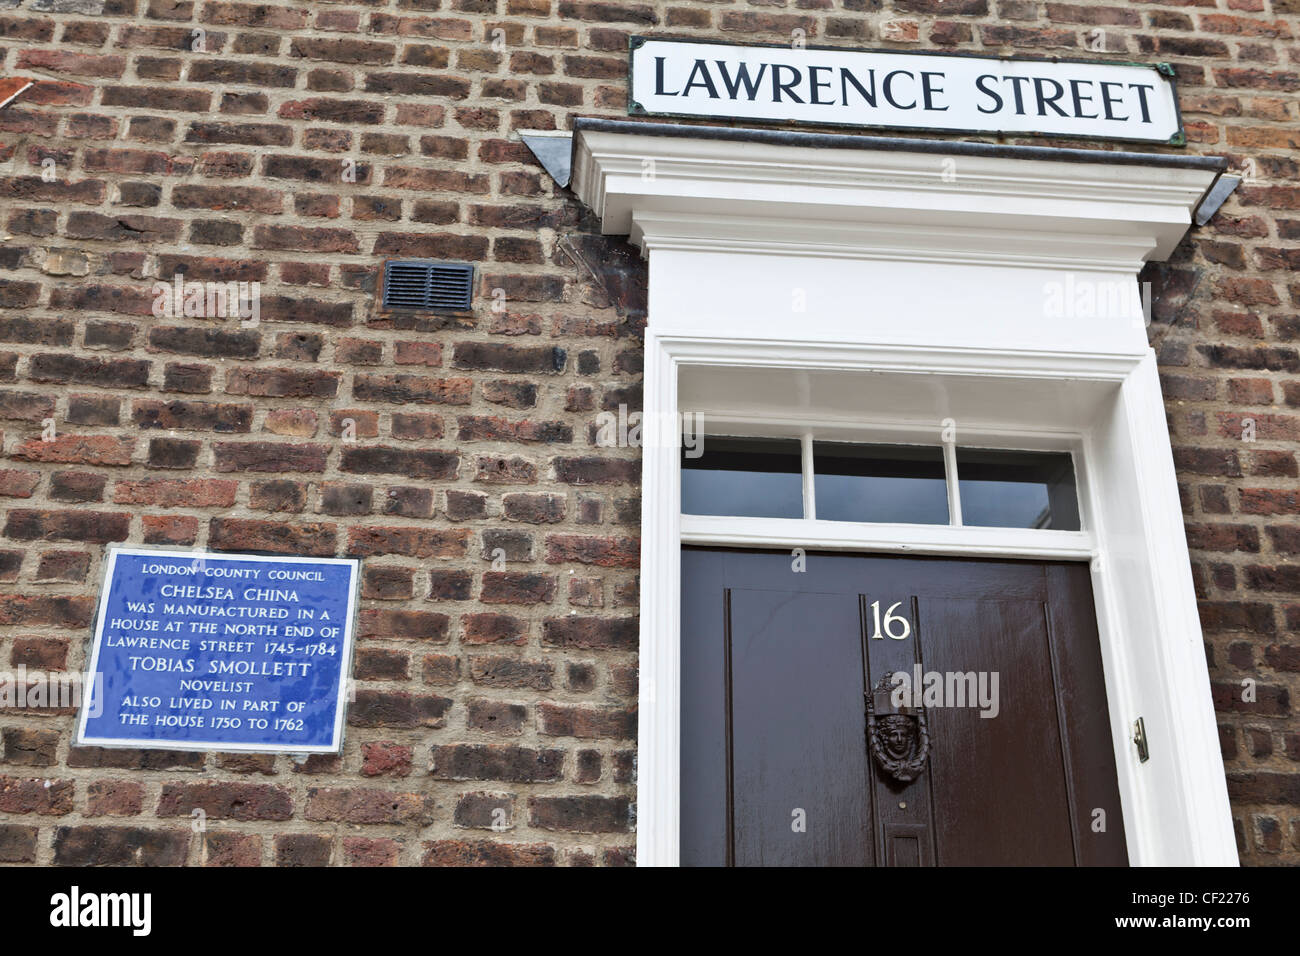 London County Council-Plakette an der Wand des 16 Lawrence Street feststellend, dass Chelsea China in einem Haus an der Nort hergestellt wurde Stockfoto